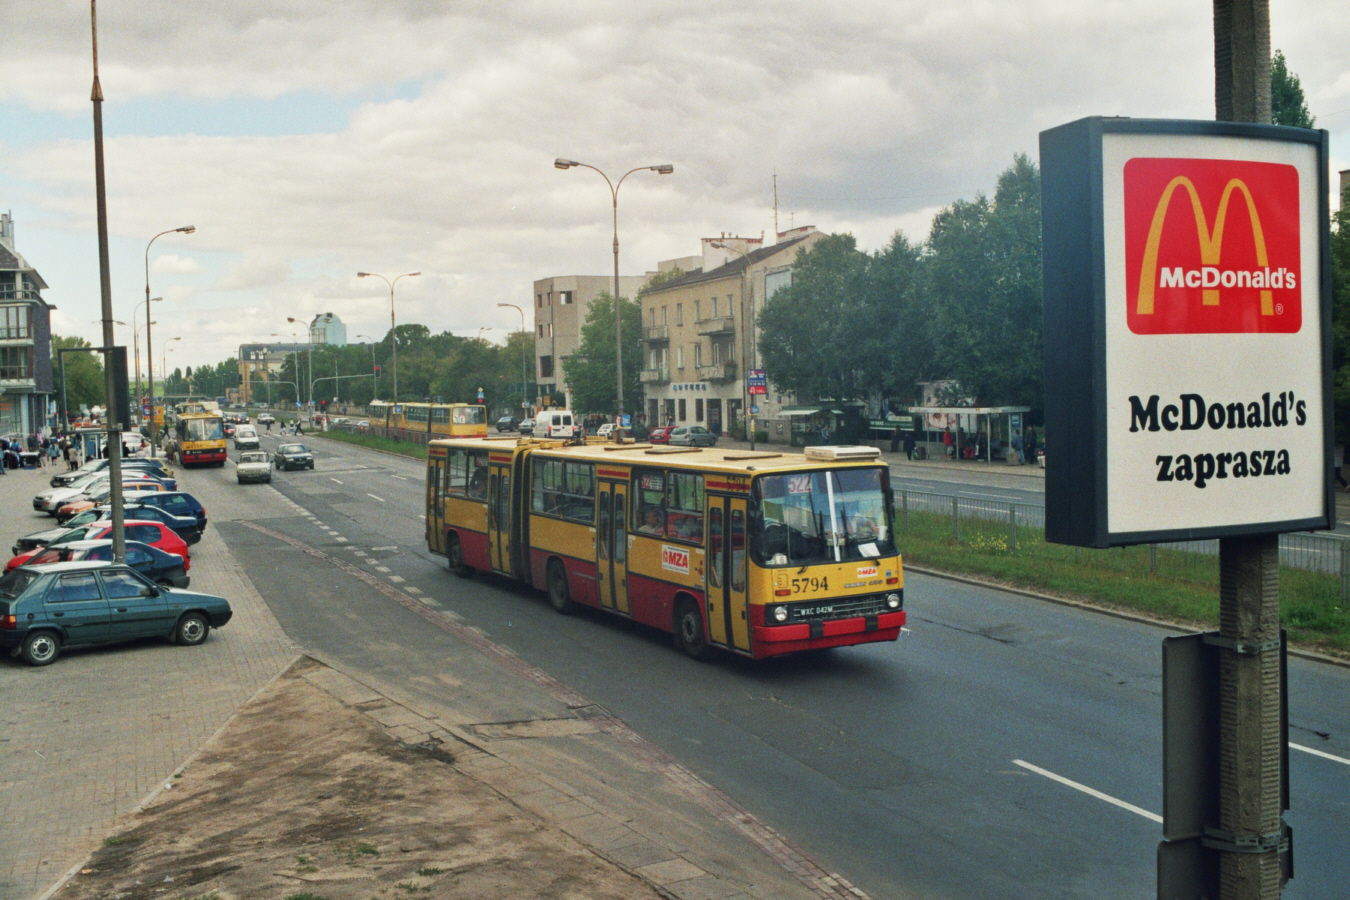 5794
Wóz 5794 na ulice Warszawy wyjechał pod koniec 1997 roku.
Kolejne wozy z rocznika '97 rozpoczęły służbę już w 1998 roku i miały naklejane numery taborowe, ten jako ostatni miał je naniesione z szablonu.
Wóz ten otrzymał kierowca, który jeździł wcześniej pojazdem 3086.
Linia 522 jeszcze na dawnej trasie Redutowa - Wilanów jak dawna B-etka.
Zapewne jeszcze w 2024 roku 522 przejdzie na zawsze do historii po otwarciu linii tramwajowej wzdłuż ulicy Sobieskiego.

Foto: P. B. Jezierski
